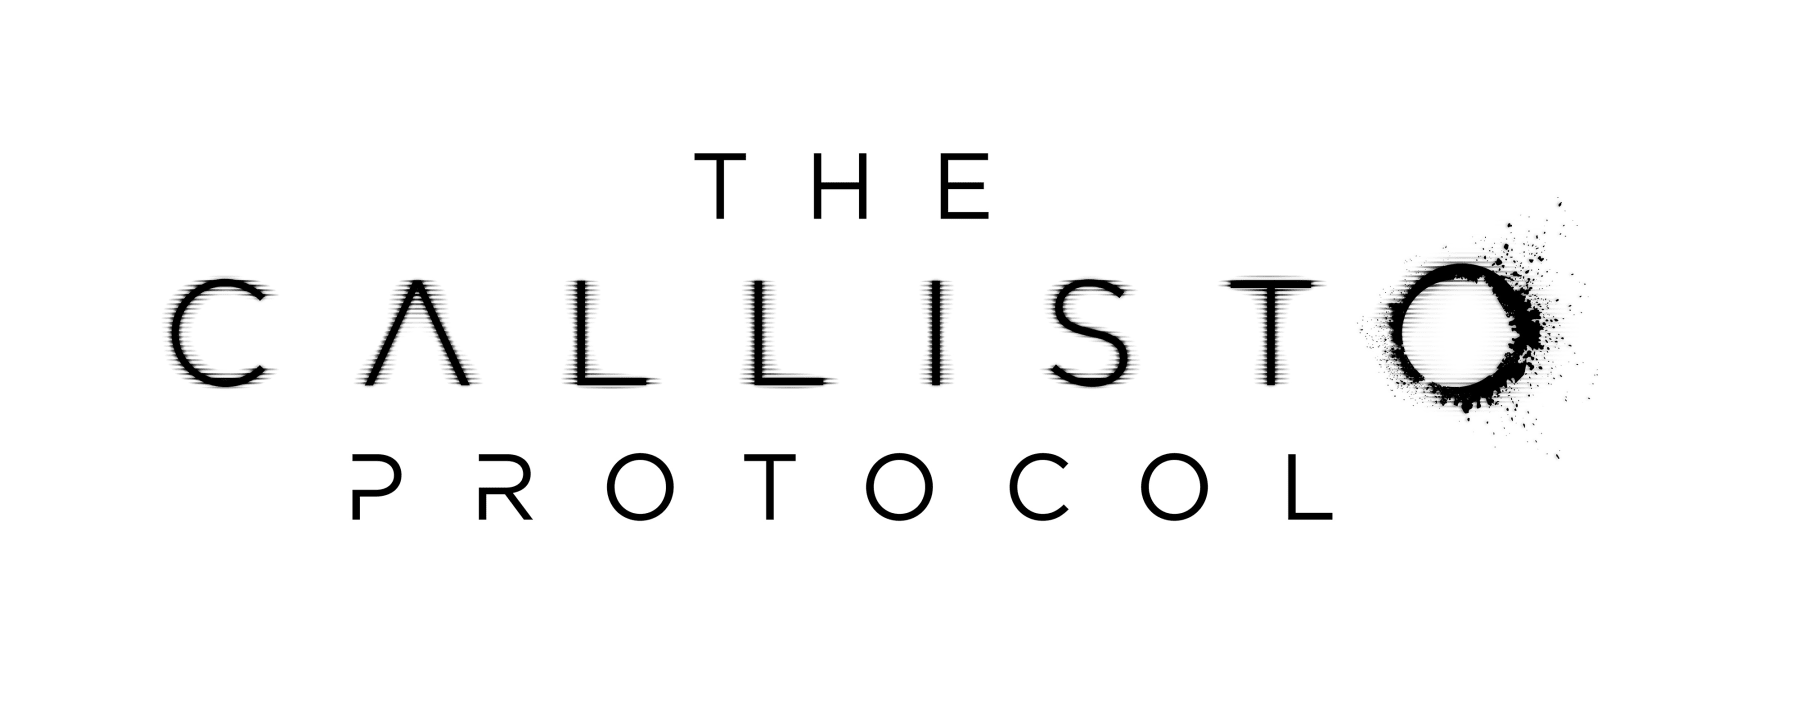 The Callisto Protocol - Wikipedia